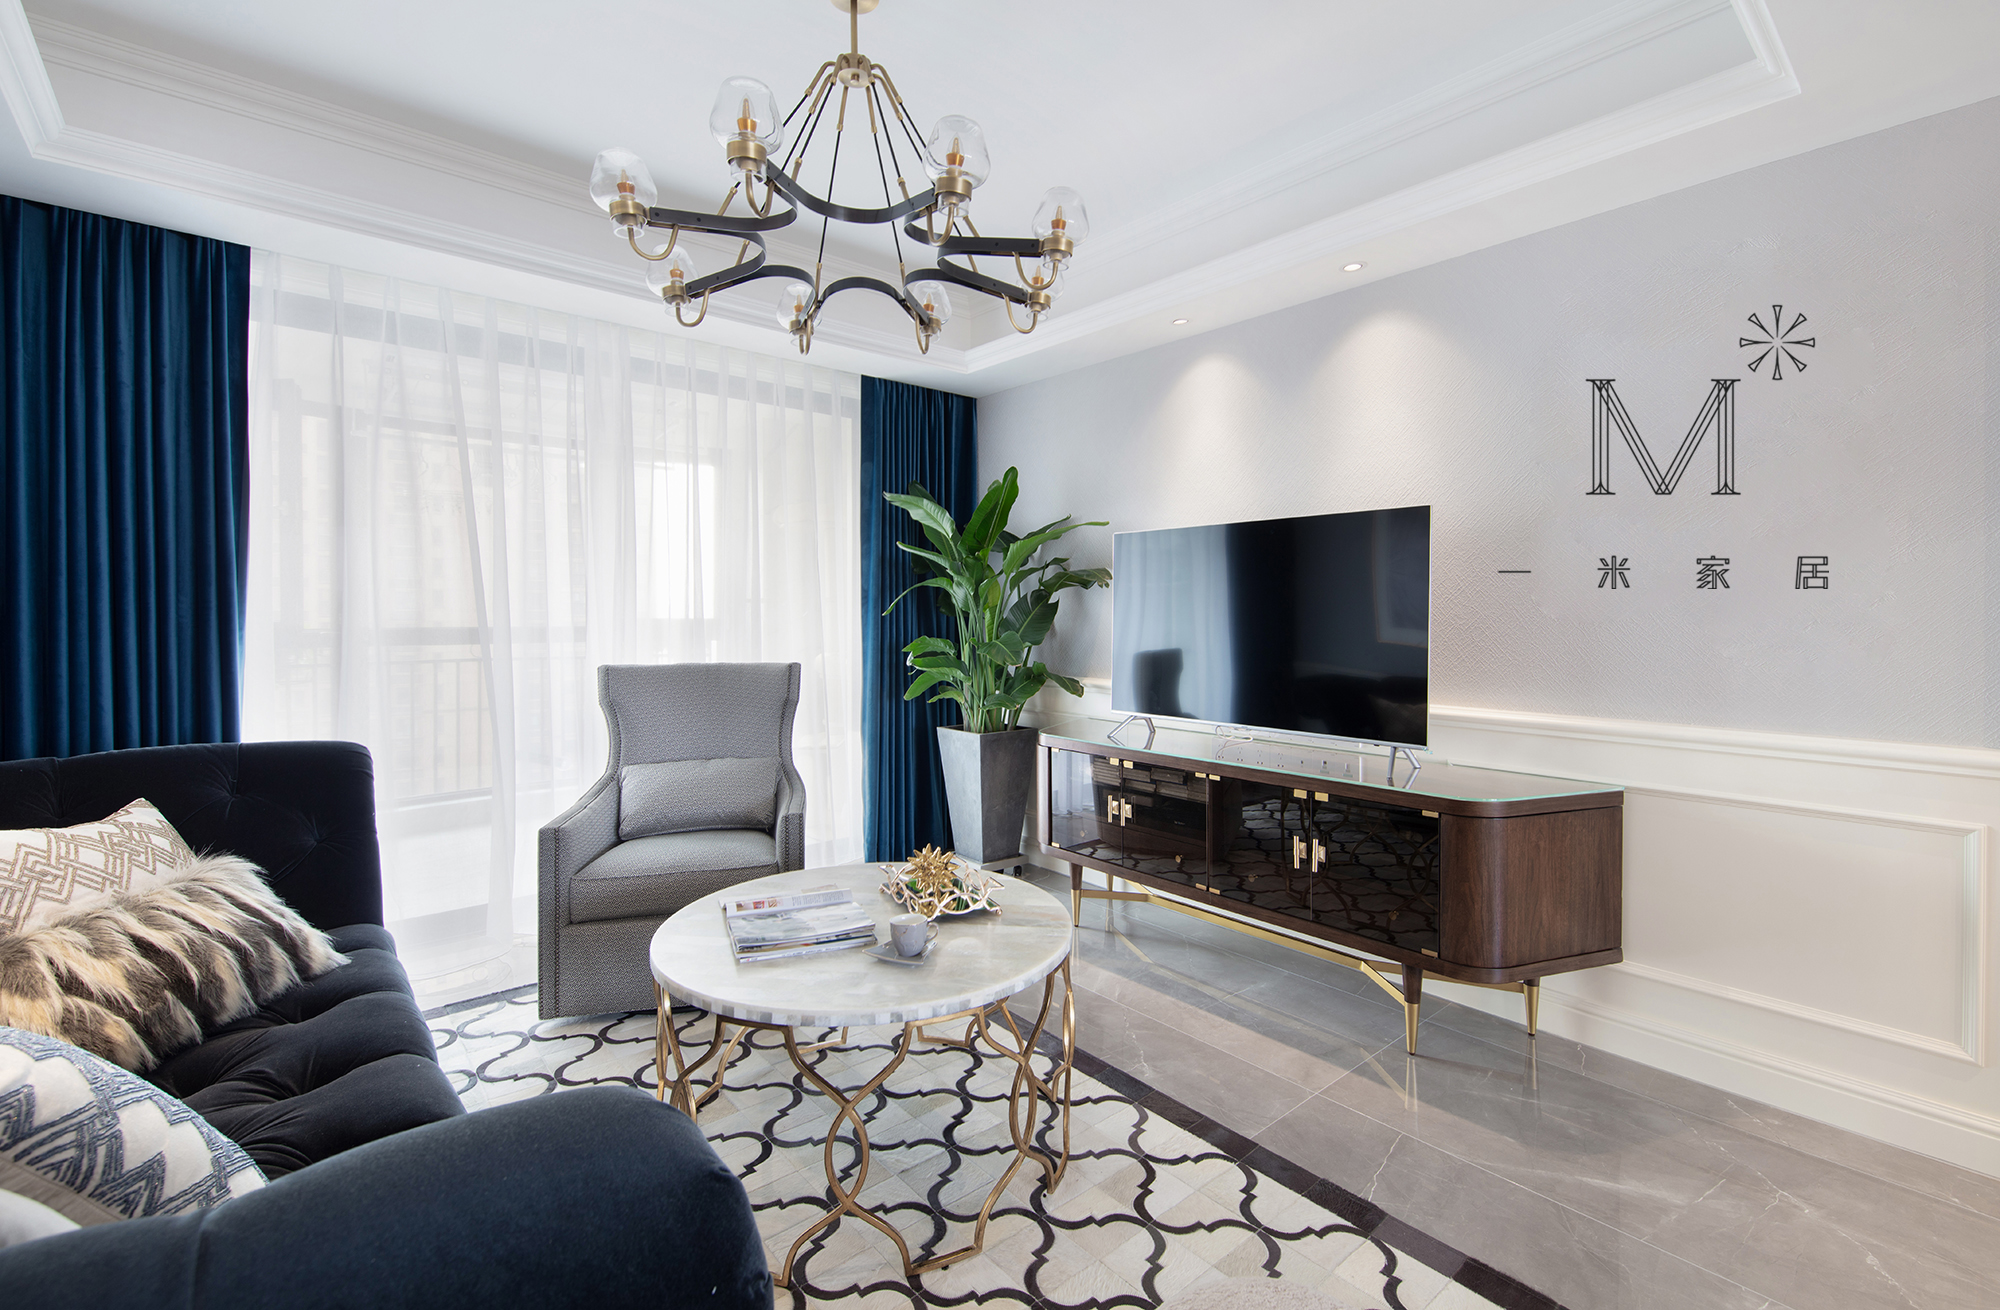 客厅窗帘2装修效果图130㎡低奢美式客厅吊灯图美式客厅设计图片赏析